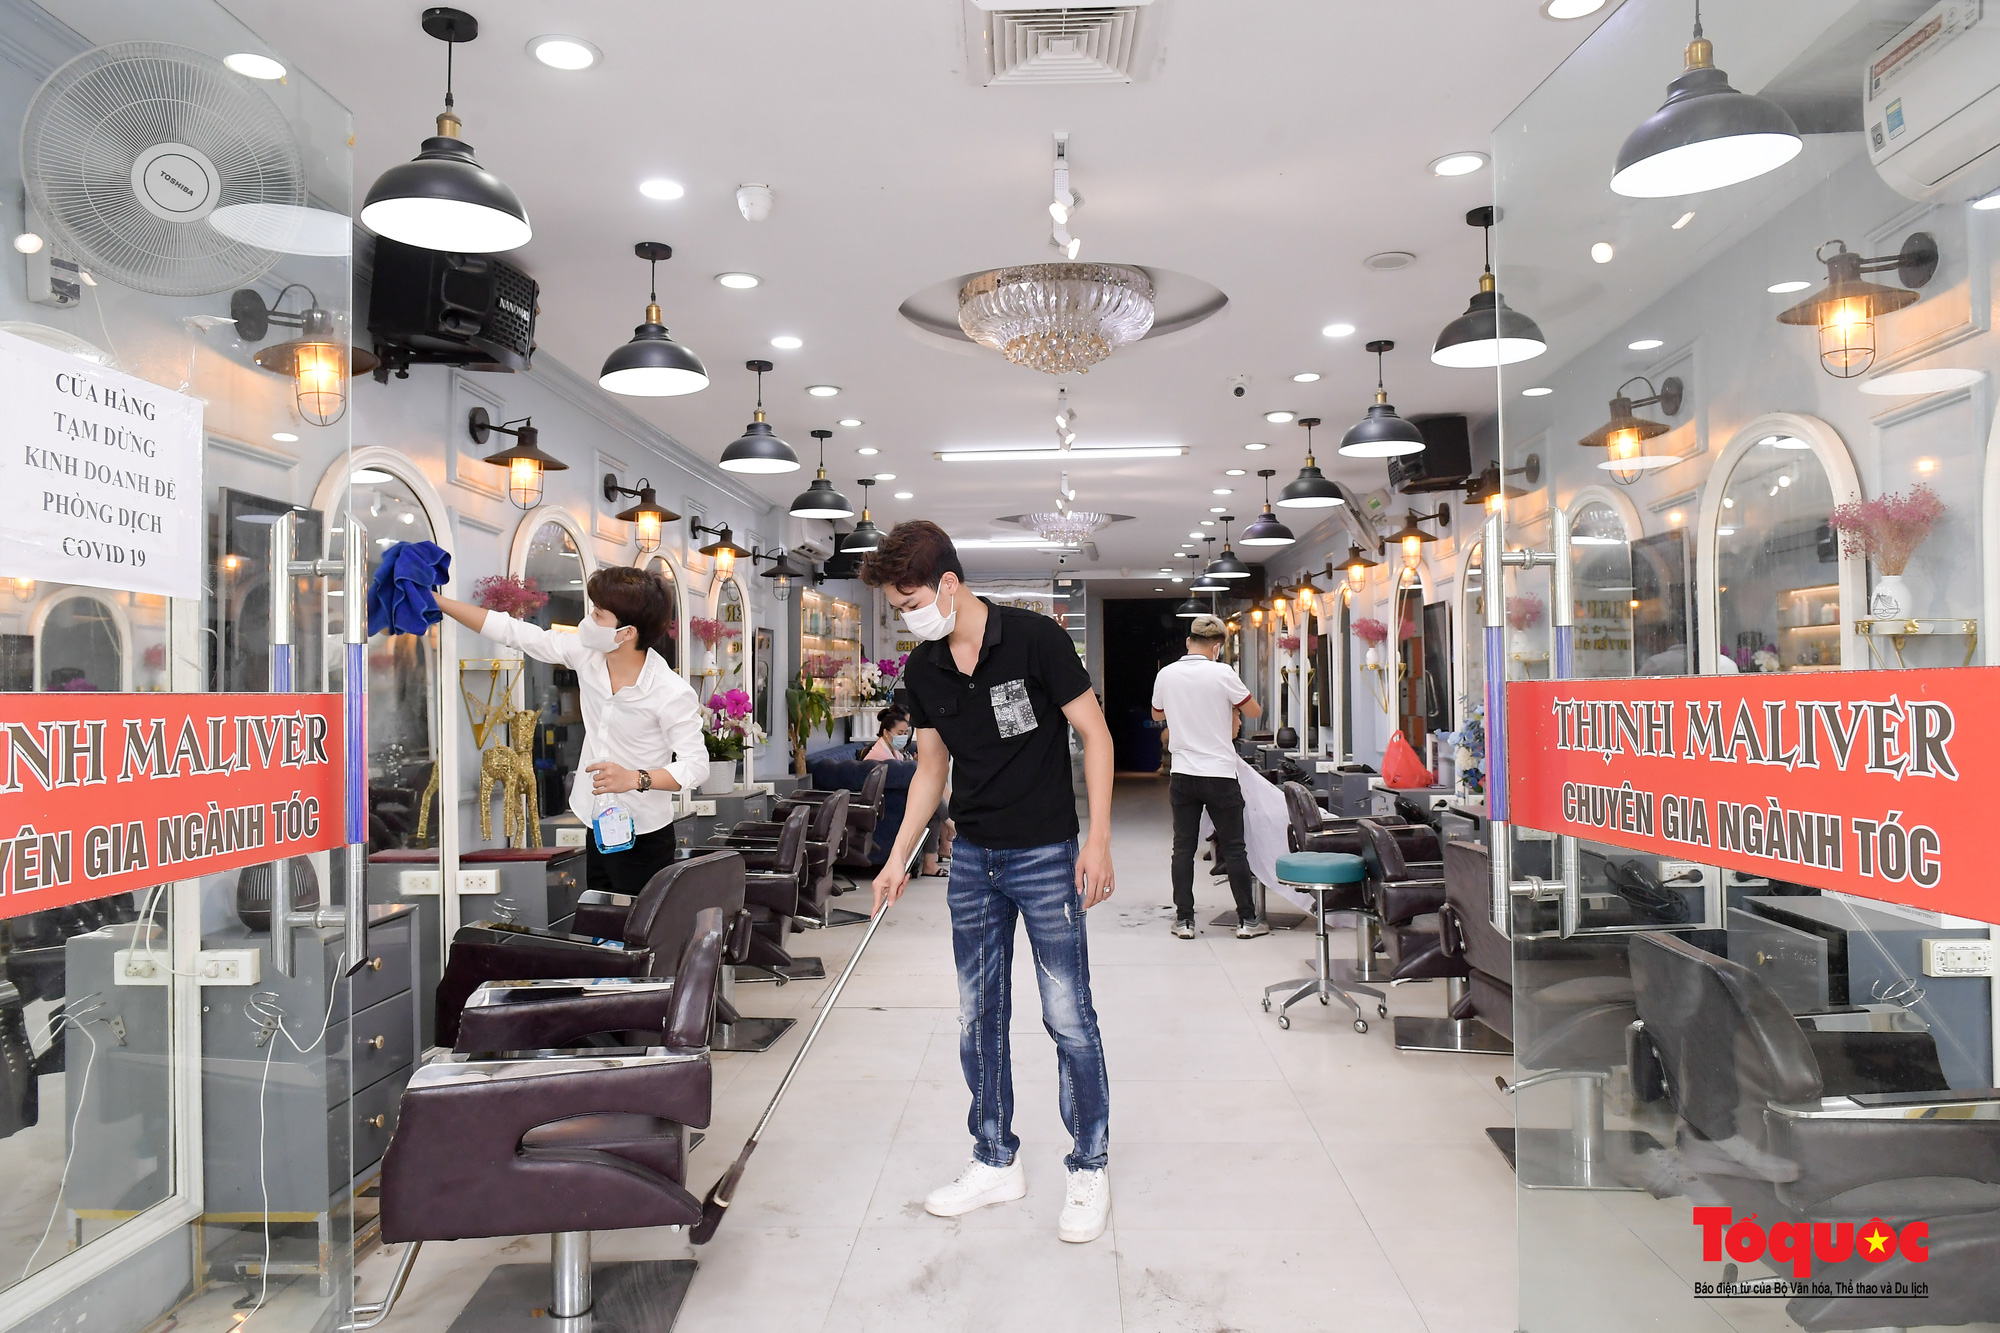 Hà Nội: Cửa hàng cắt tóc phấn khởi mở cửa trở lại, người dân xếp hàng &quot;làm đẹp&quot; sau 60 ngày giãn cách - Ảnh 1.